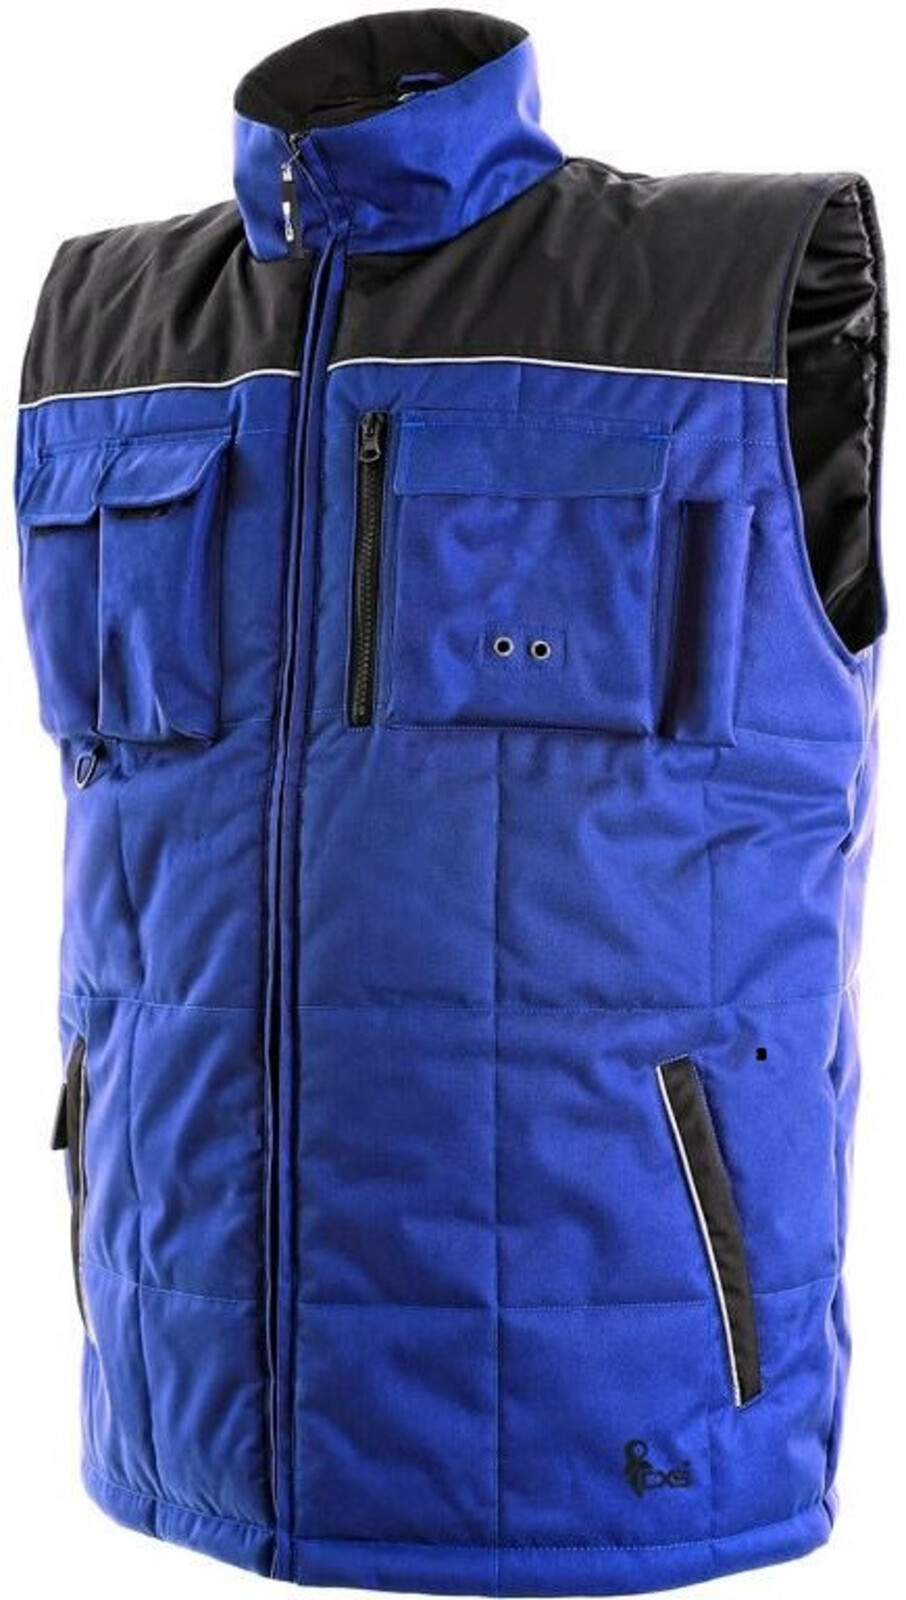 Pánska zateplená zimná vesta CXS Seattle - veľkosť: S, farba: modrá/čierna